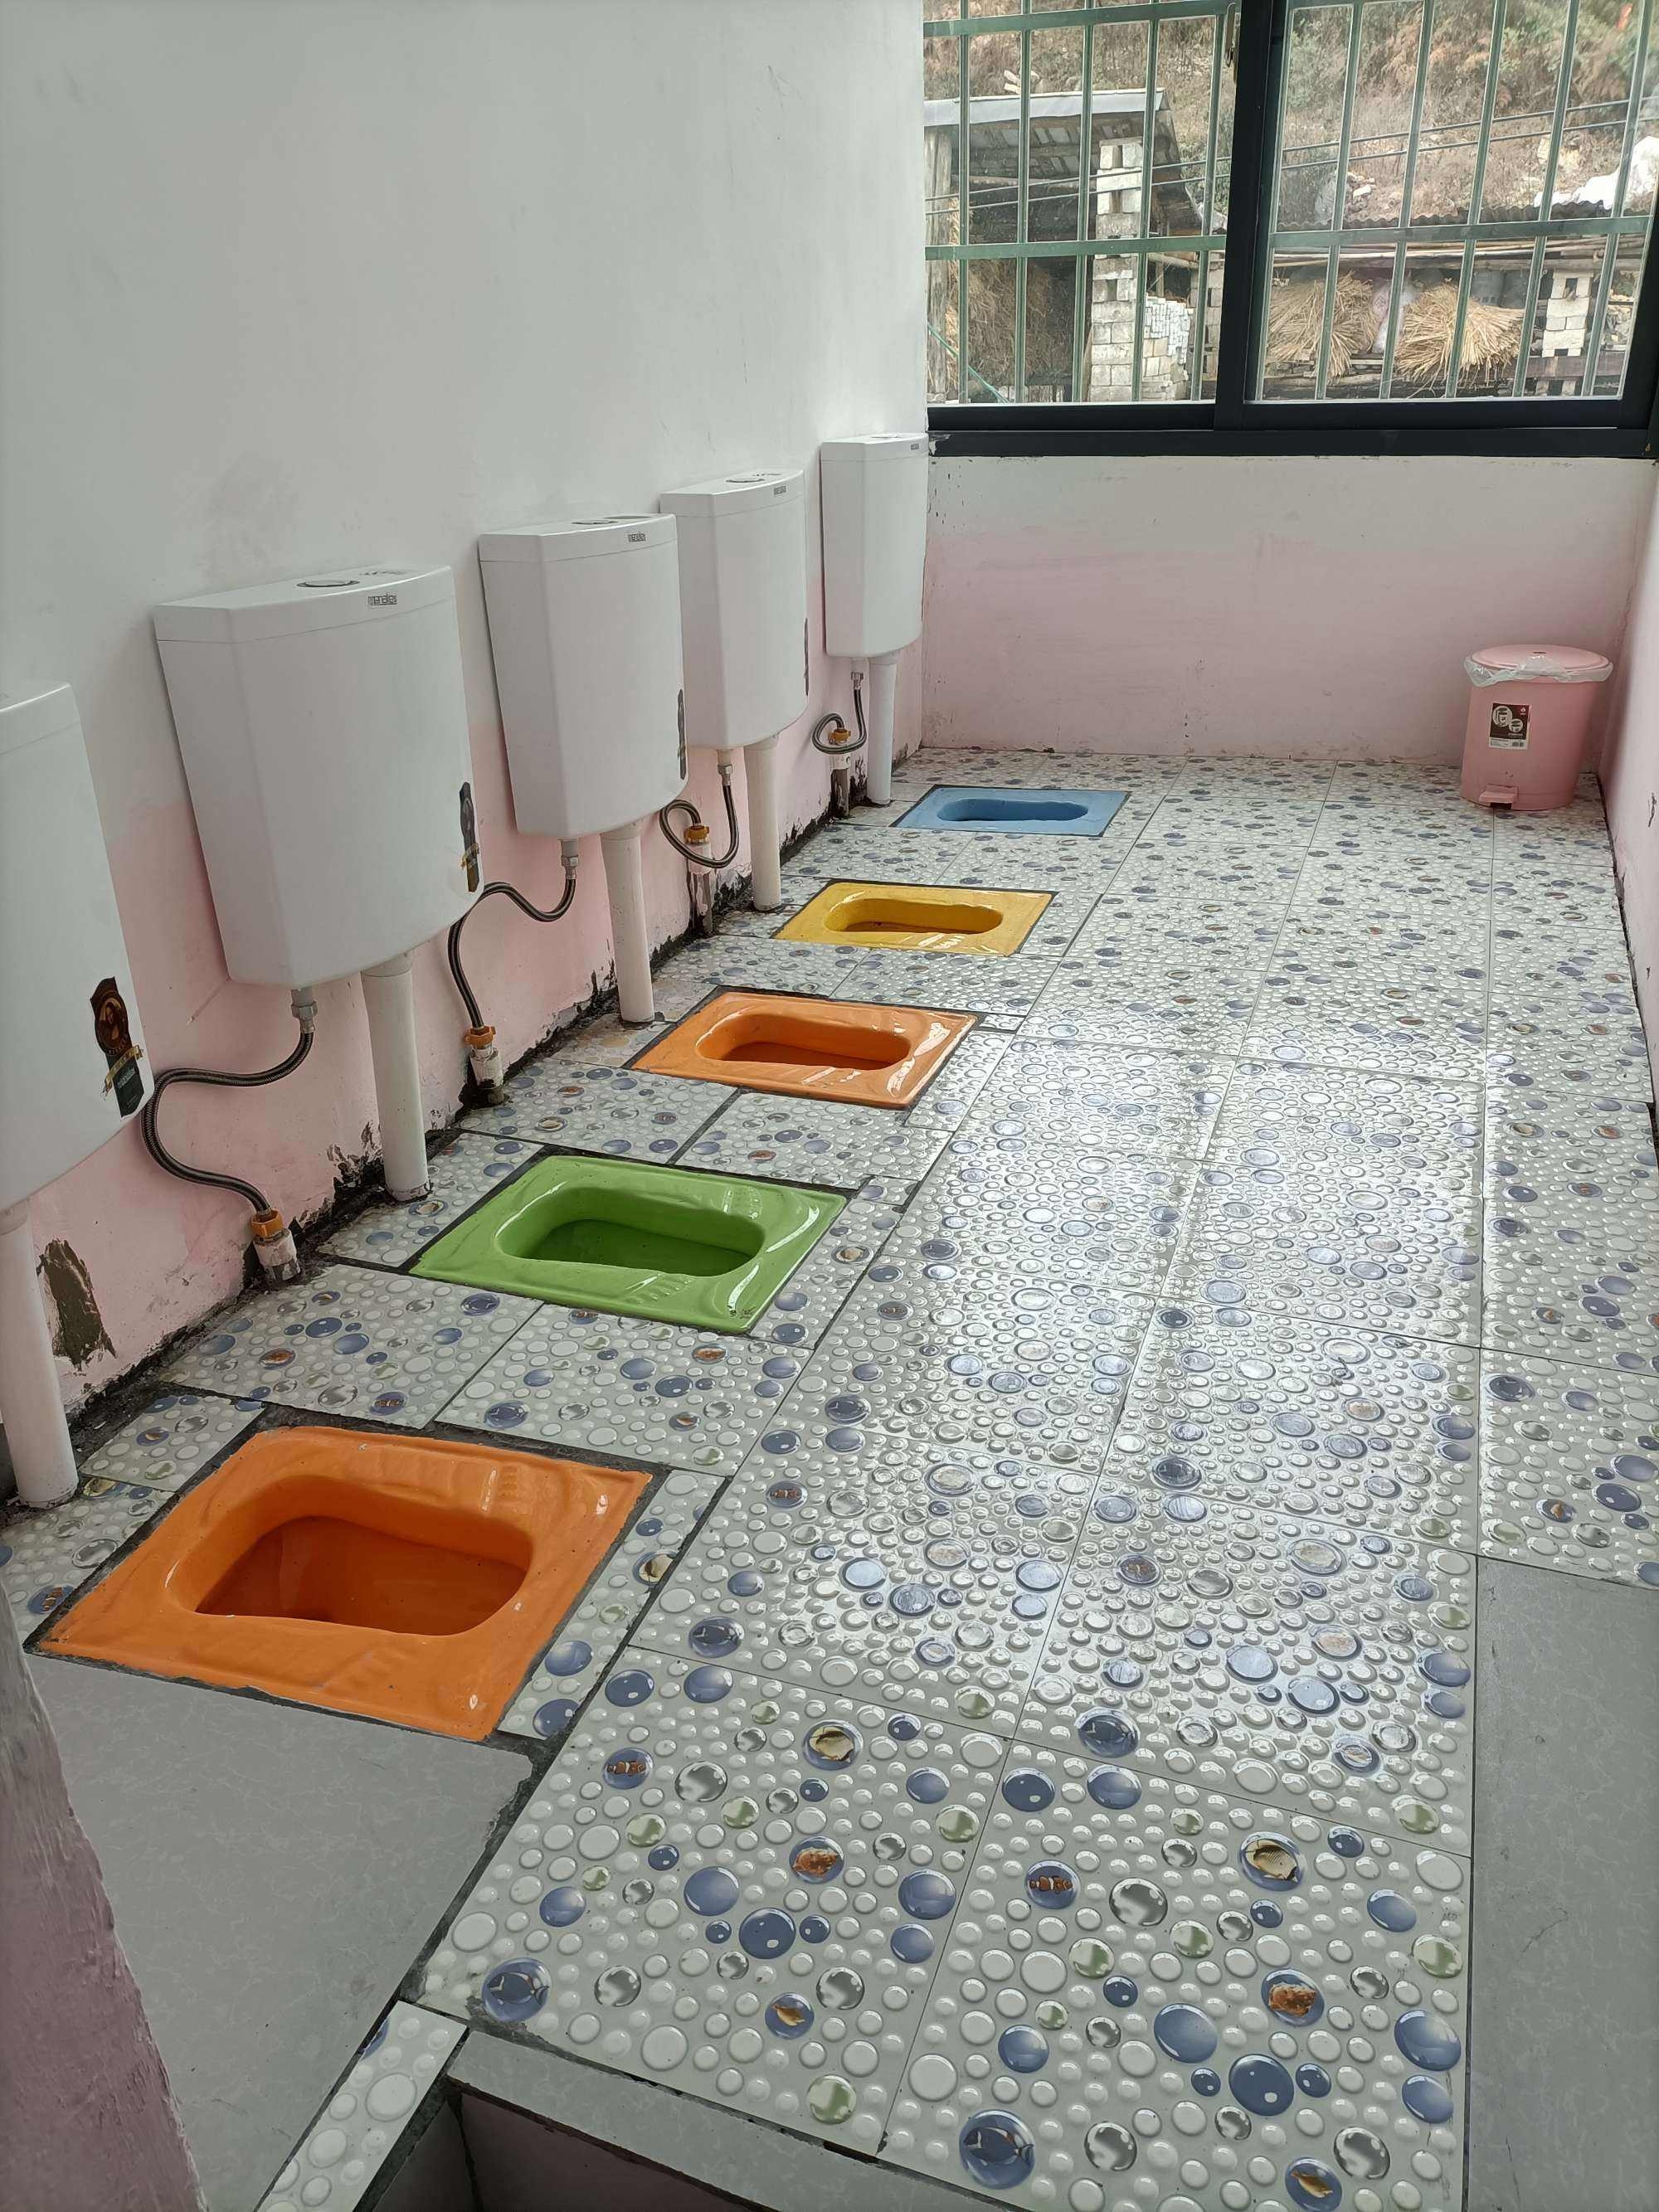 幼儿园女孩厕所小便-图库-五毛网